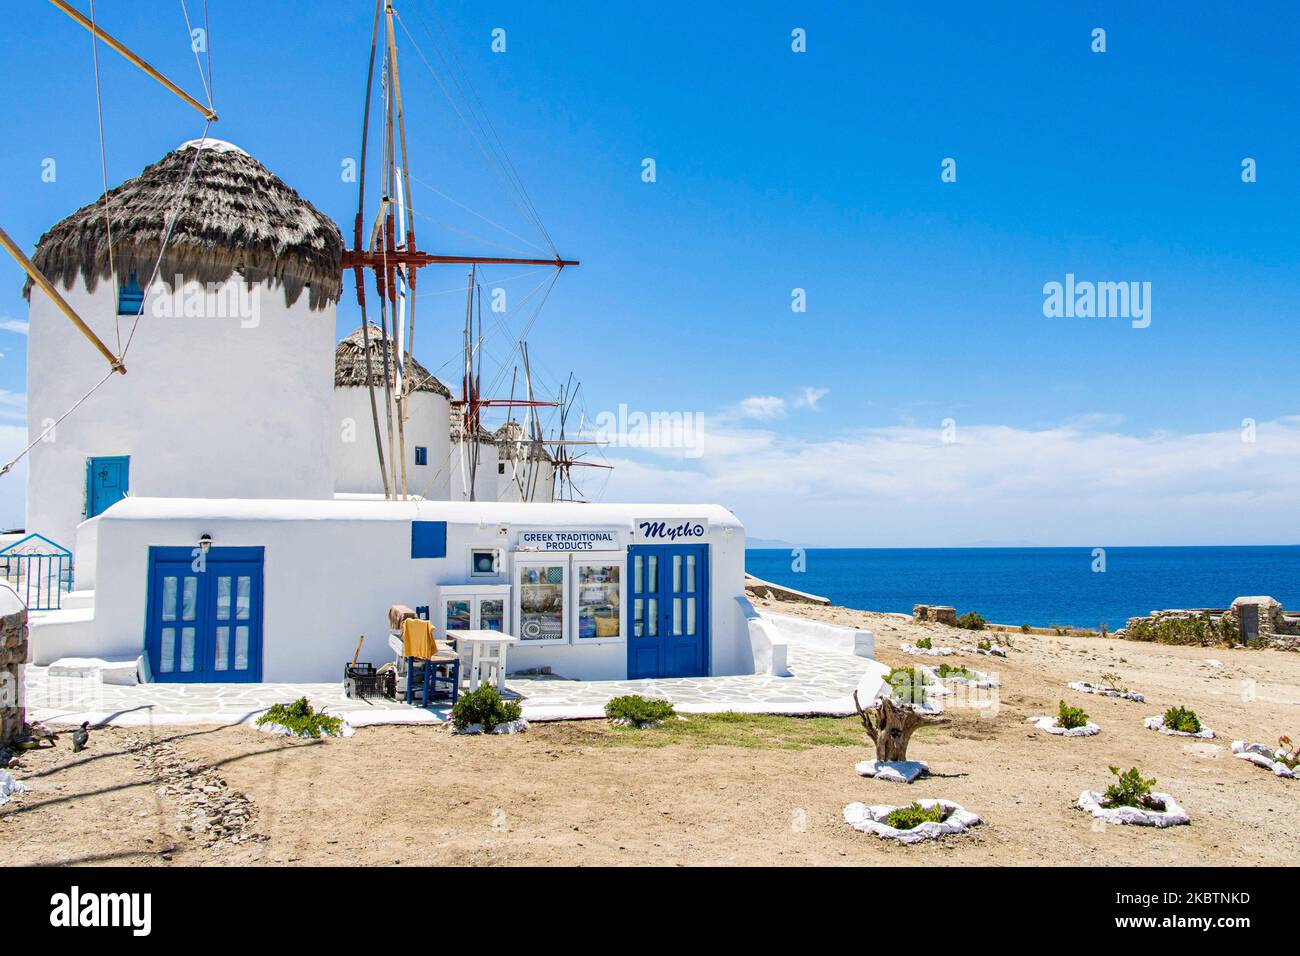 Les moulins à vent emblématiques de l'île de Mykonos, les îles Cyclades, la mer Egée, la Grèce sur 14 juillet 2020. Il n'y a presque personne dans les moulins à vent en raison des mesures pandémiques du coronavirus et de l'interdiction de la circulation que la Grèce a appliquées. Il y a 16 moulins à vent sur l'île, dont 5 au-dessus de Chora ou Mykonos, la ville principale de l'île. Les moulins à vent ont été construits au 16th siècle à partir des Vénitiens mais leurs constructions se sont poursuivies jusqu'au 20th siècle. La célèbre île grecque méditerranéenne est surnommée l'île des vents avec des bâtiments traditionnels blanchis à la chaux comme des moulins à vent ou une petite église. Mykon Banque D'Images